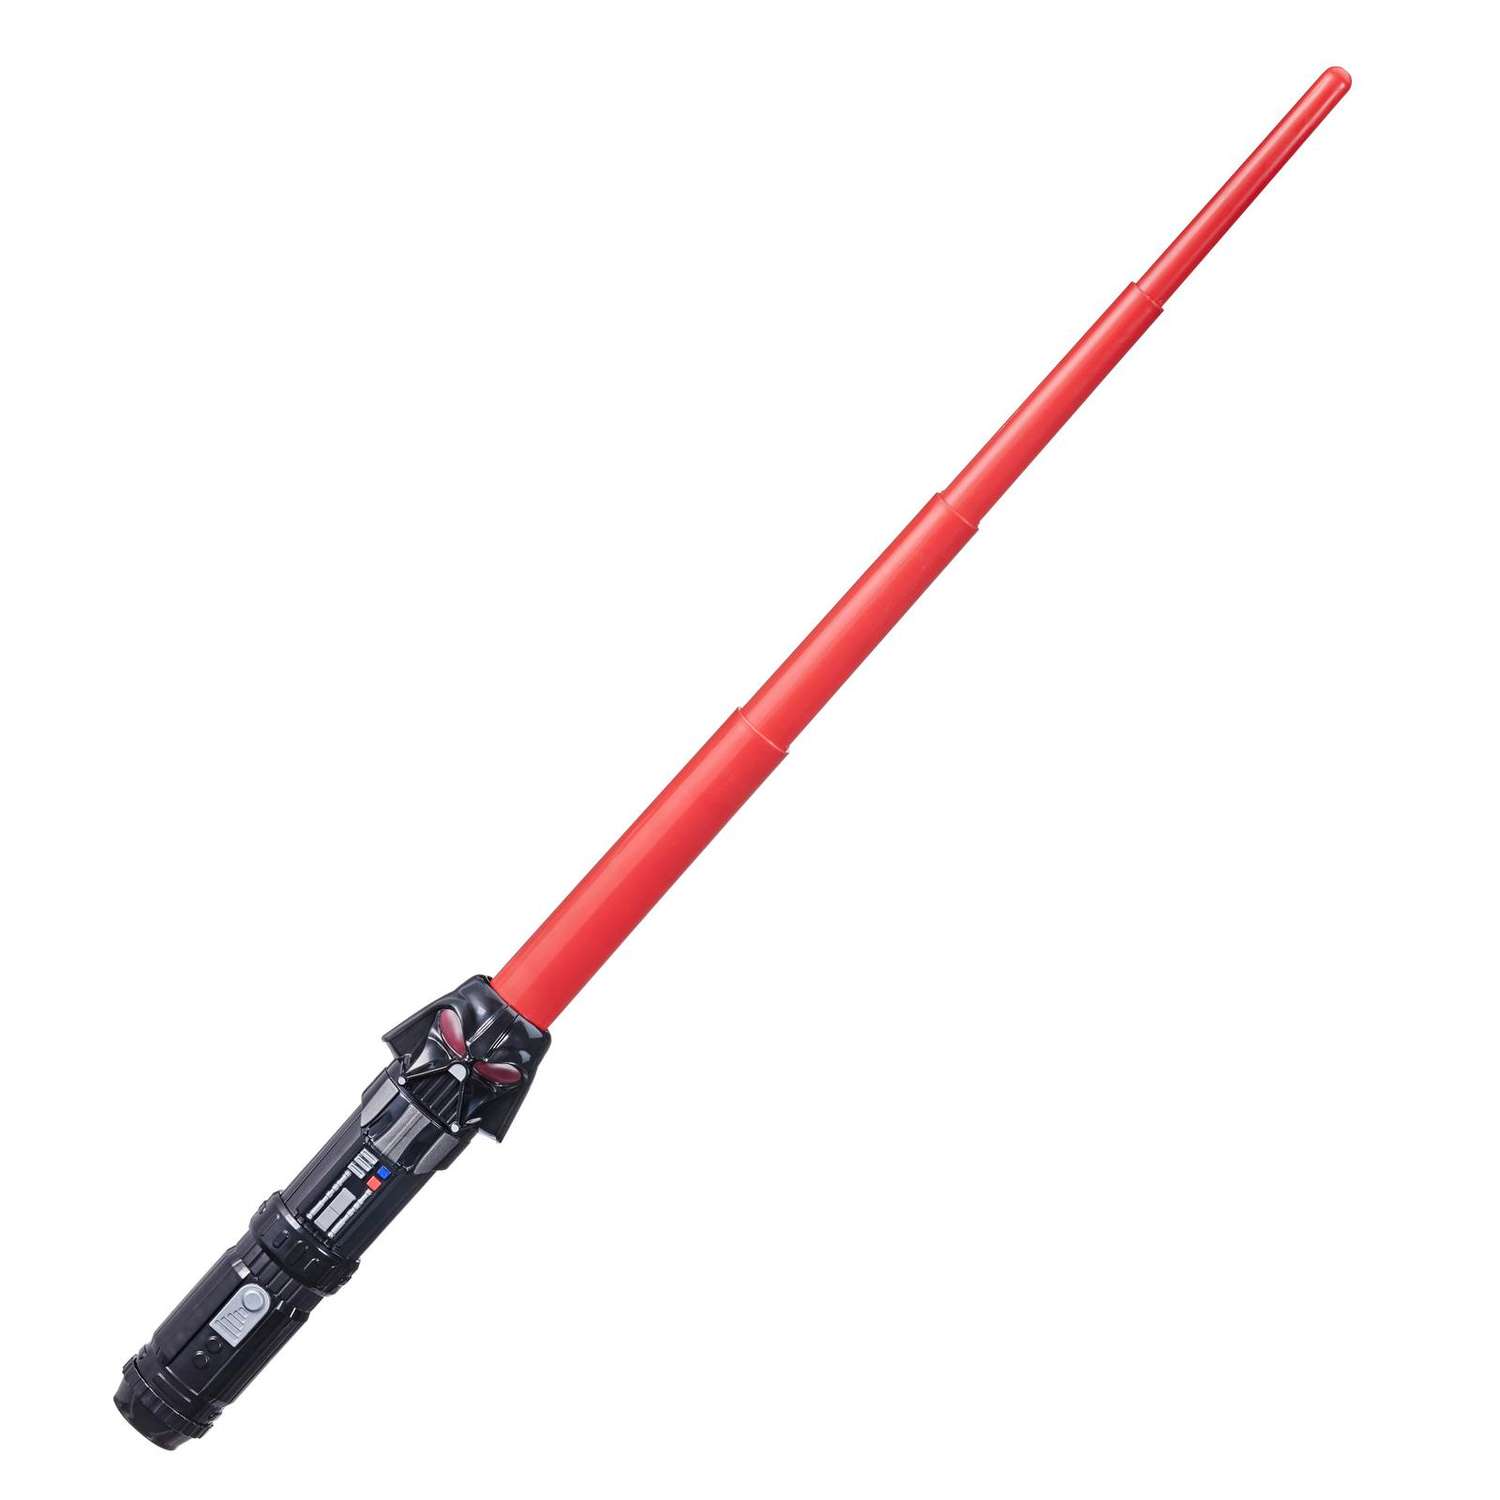 Игрушка Star Wars Команда световой меч Дарт Вейдер F10415L0 - фото 1